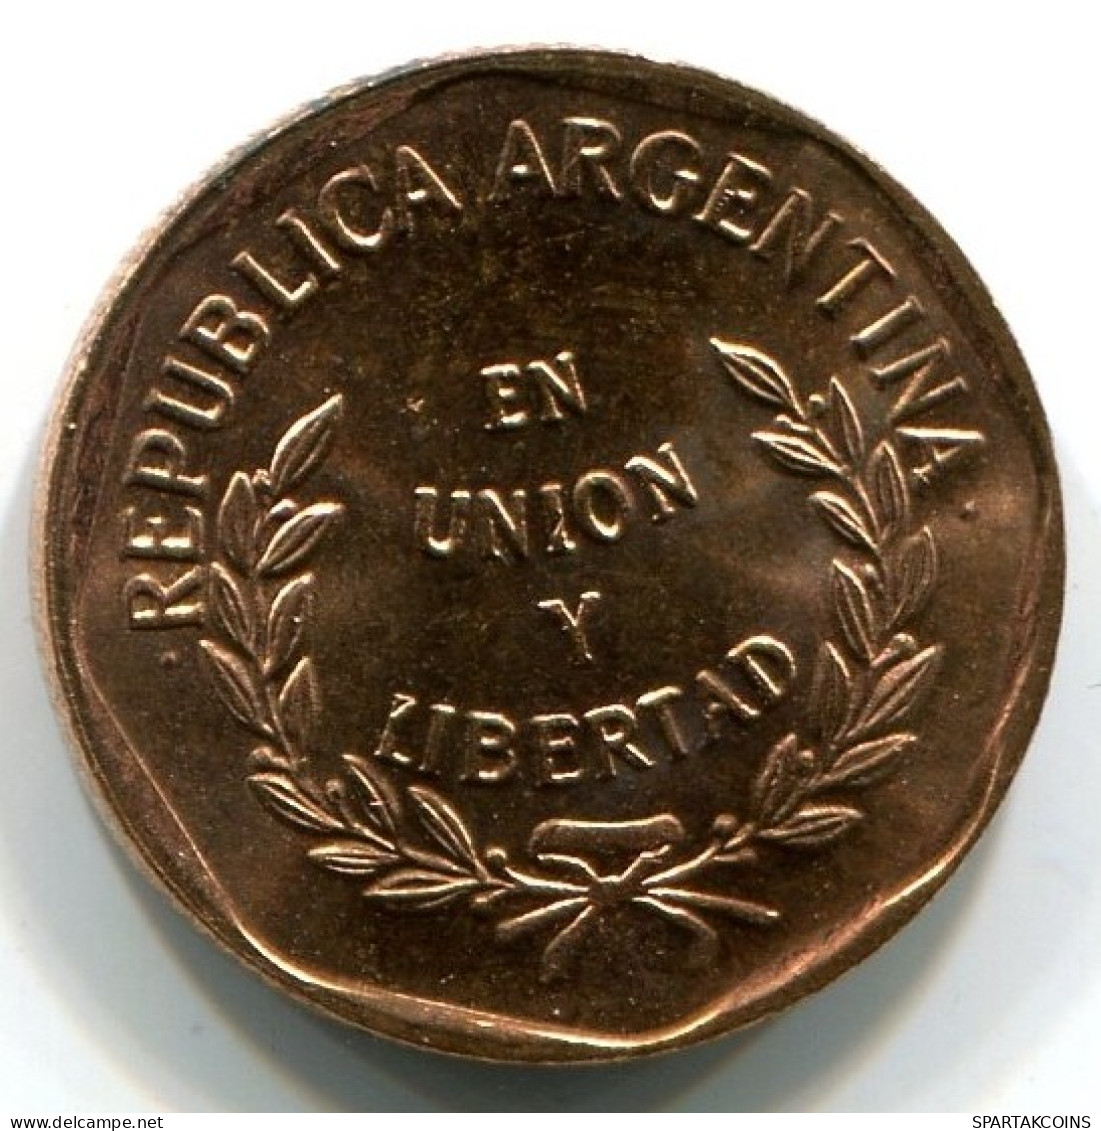 1 CENTAVO 1998 ARGENTINIEN ARGENTINA Münze UNC #W10952.D.A - Argentinië